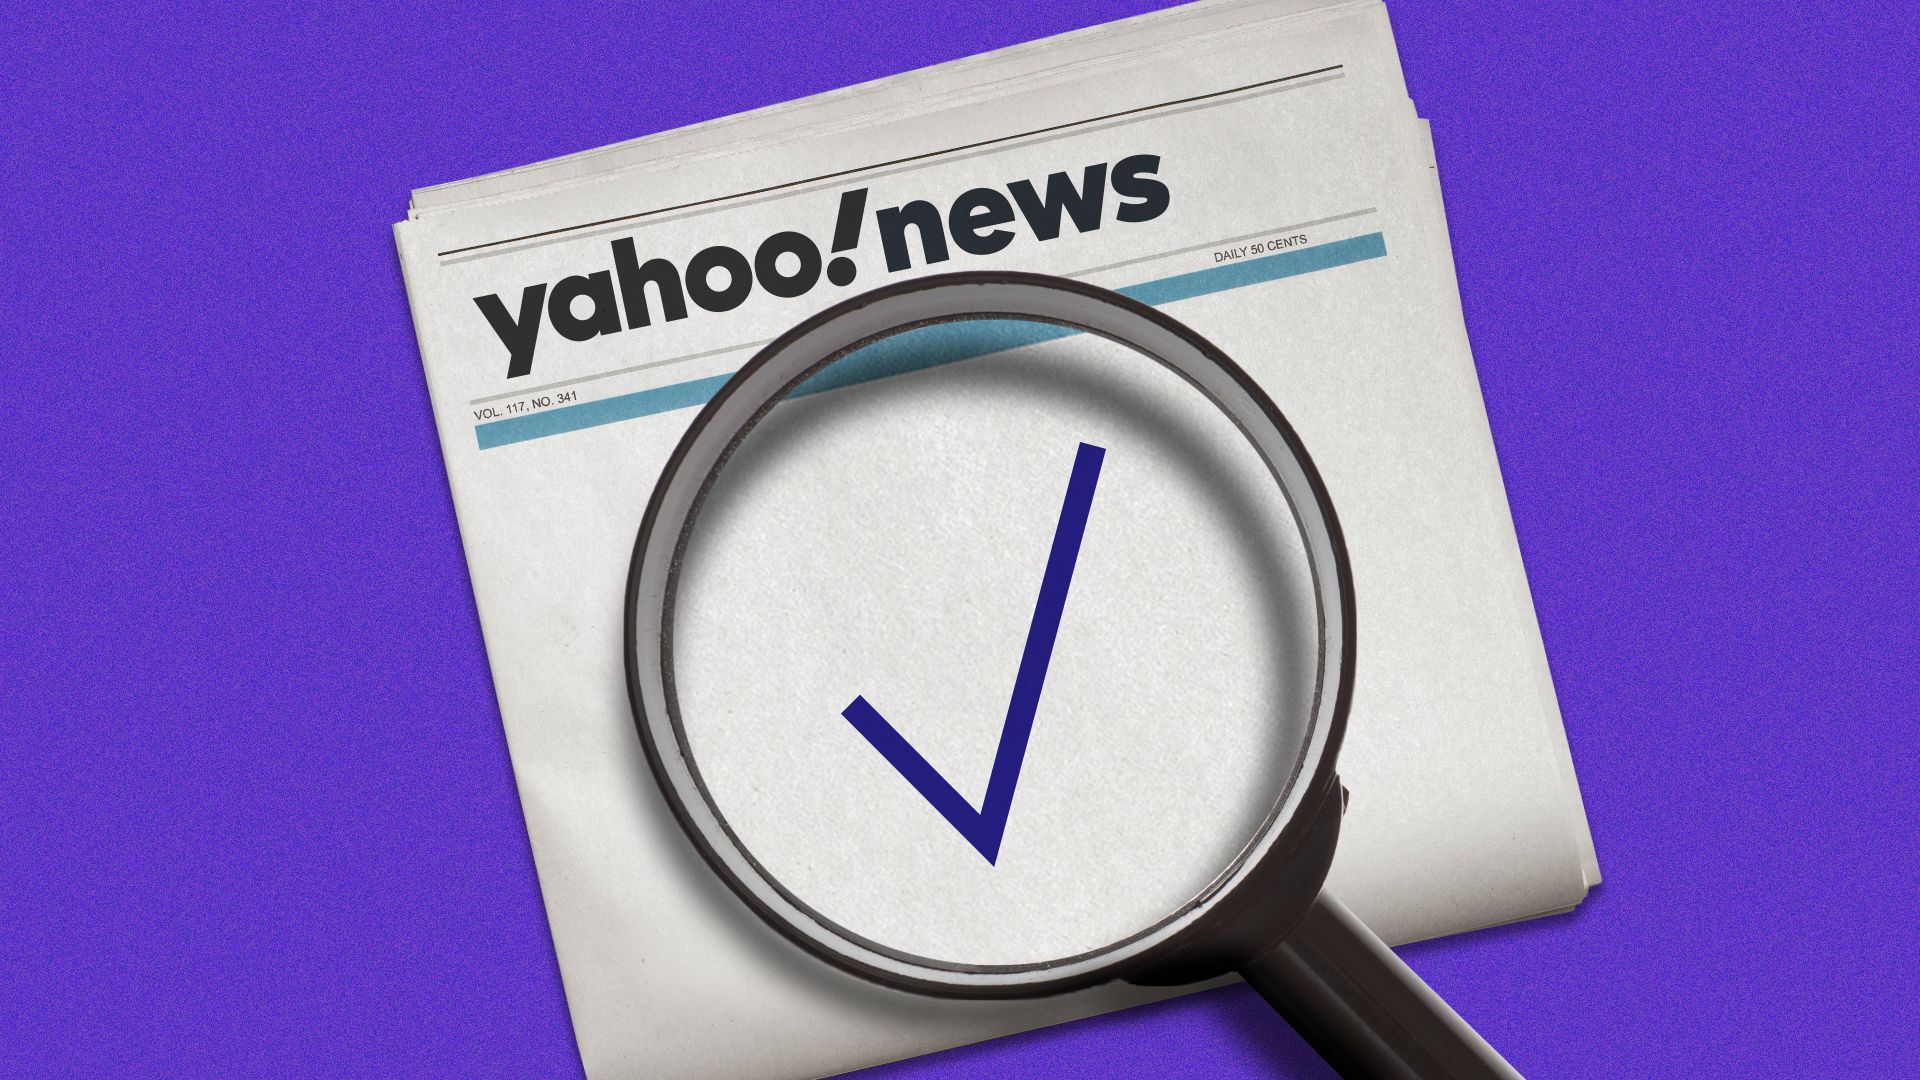 Yahoo Noticias